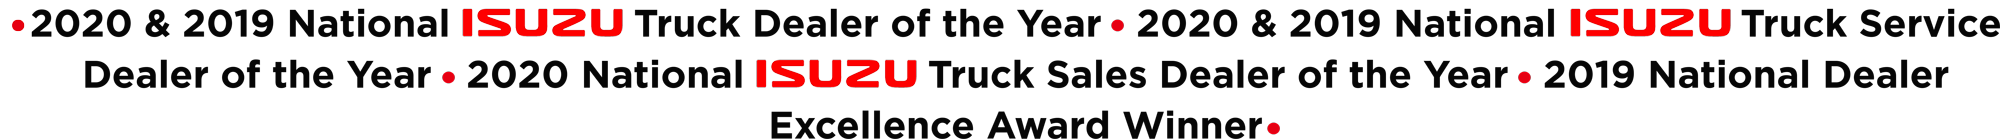 2020 & 2019 National Truck Dealer of the Year 2020 & 2019 National Truck Service Dealer of the Year 2020 National Truck Sales Dealer of the Year 2019 National Dealer Excellence Award Winner